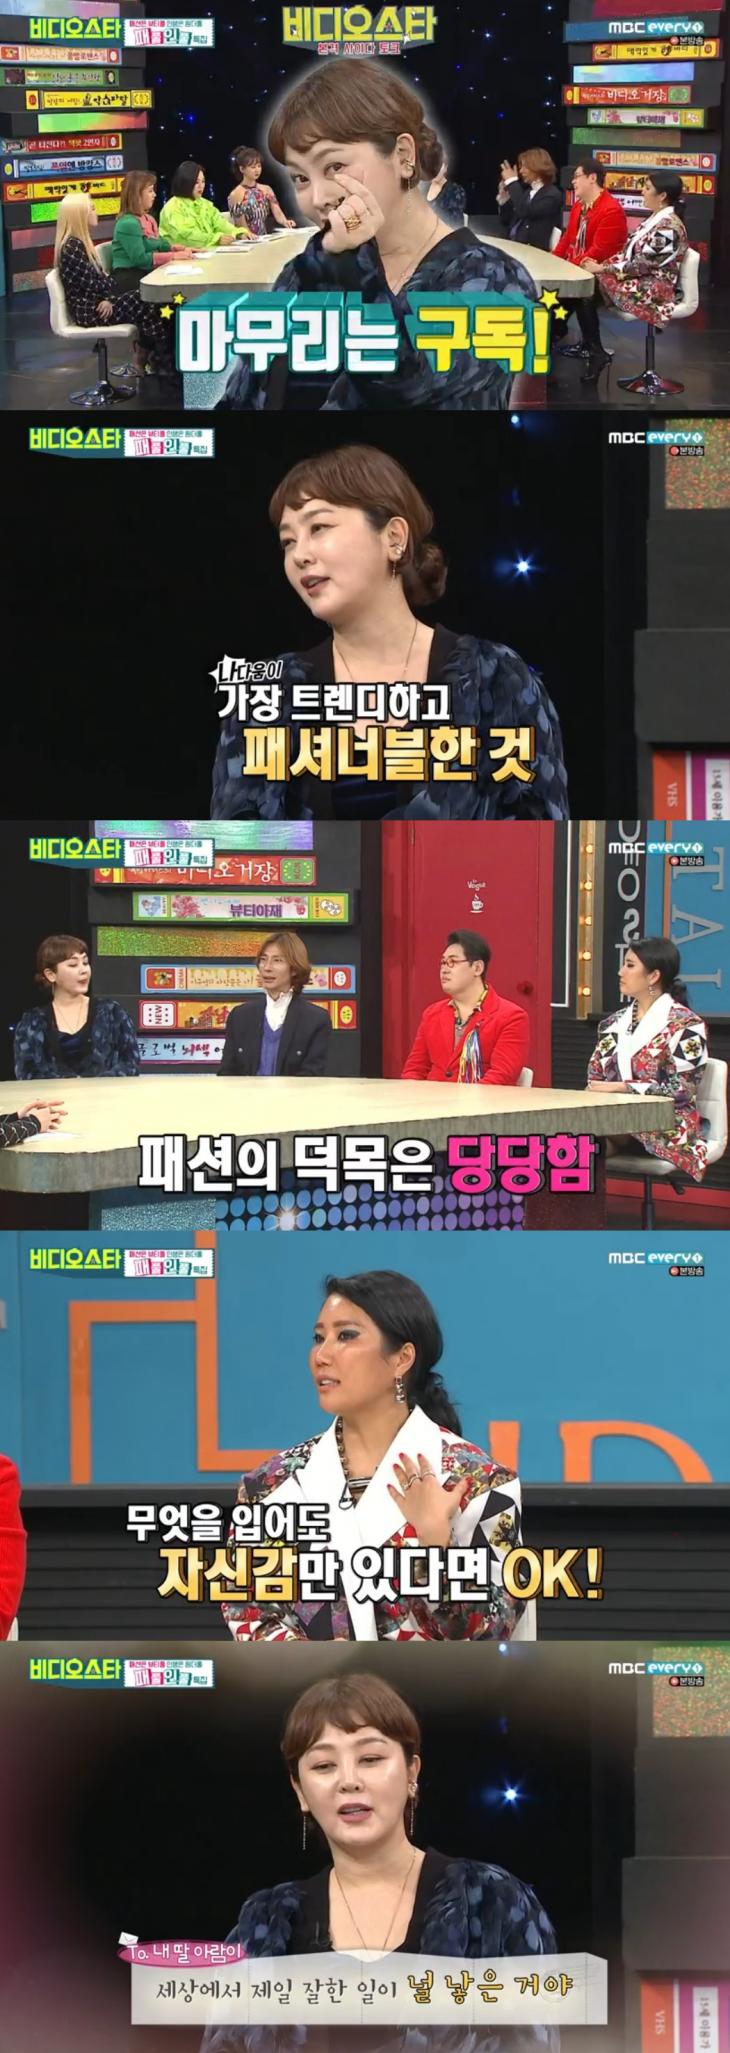 MBC every1 예능프로그램 '비디오스타'